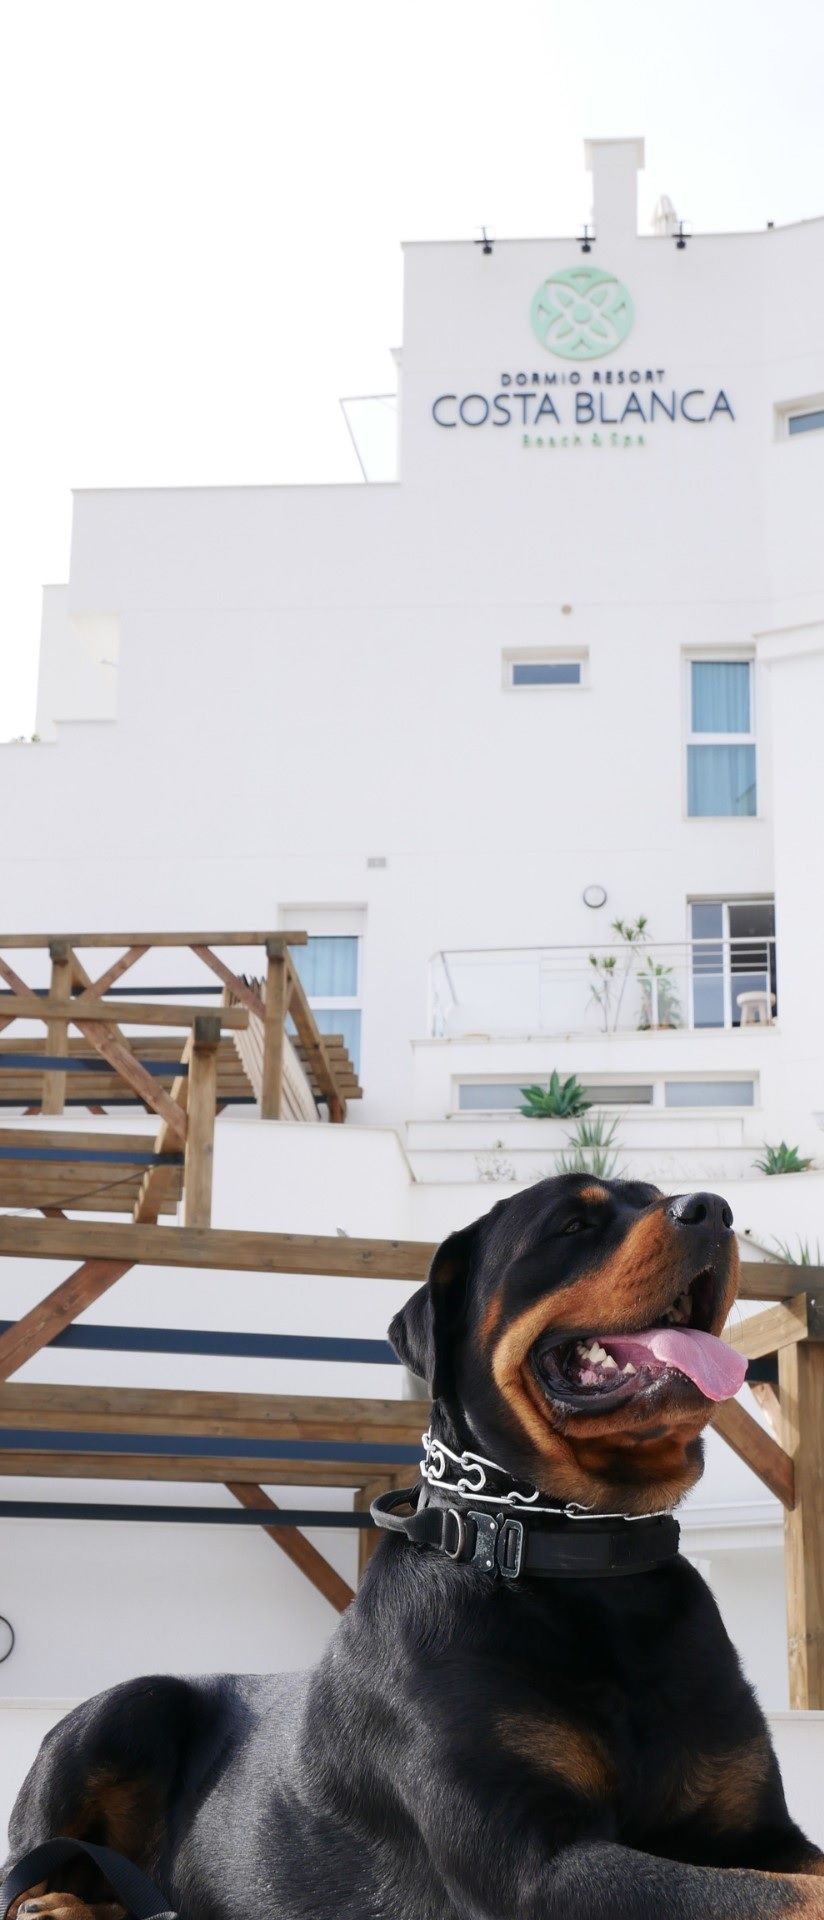  Dormio Resort Costa Blanca, un espacio Pet Friendly para disfrutar en familia